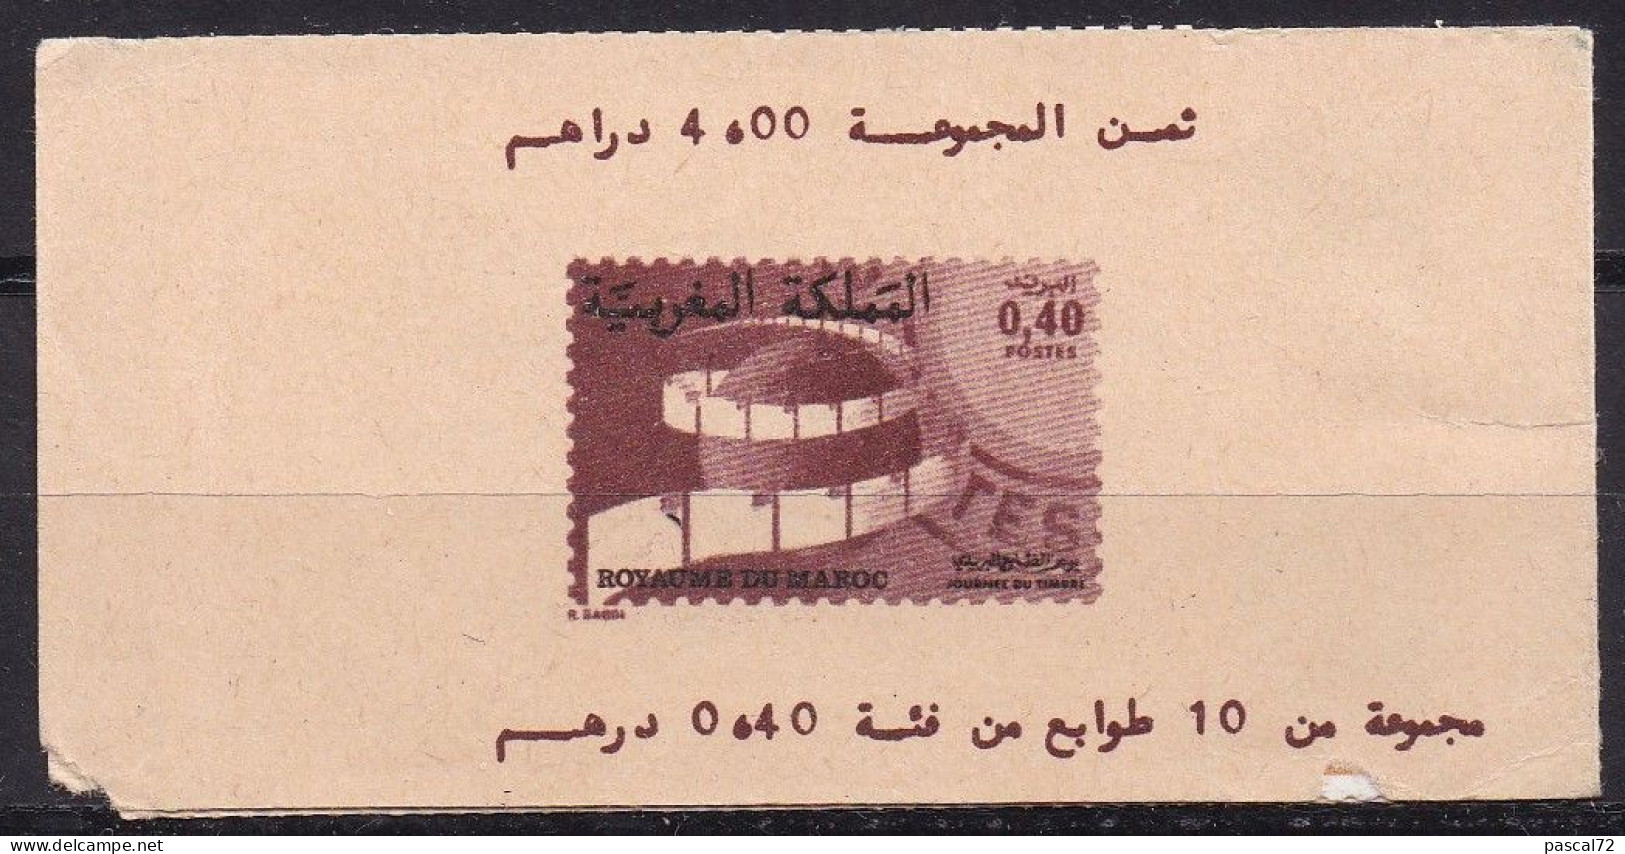 MAROC 1979 CARNET 10 TIMBRES Y&T N° C834 N** - Morocco (1956-...)